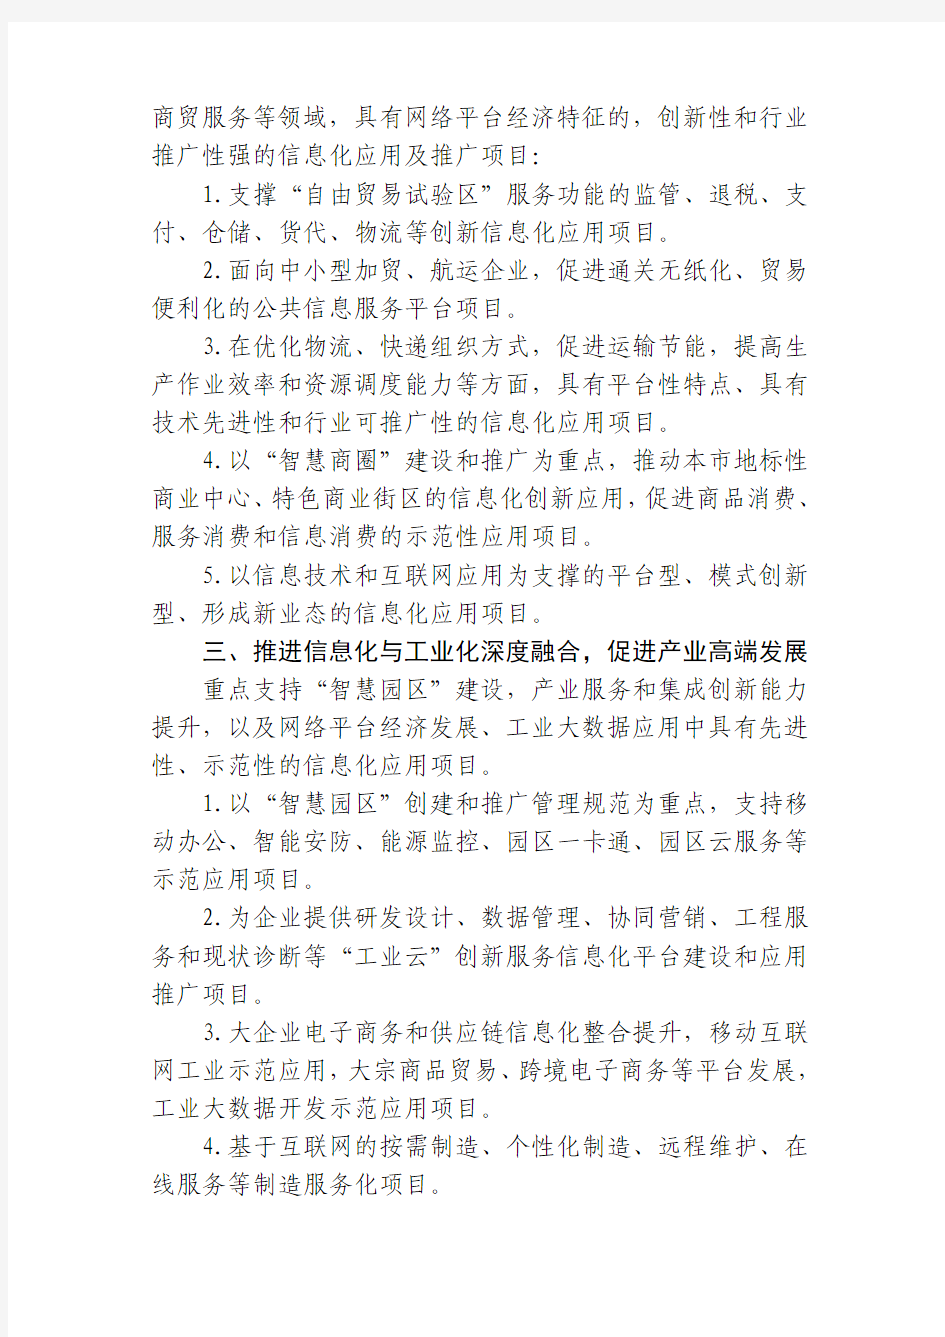 2013年度第二批上海市信息化发展专项资金项目指南